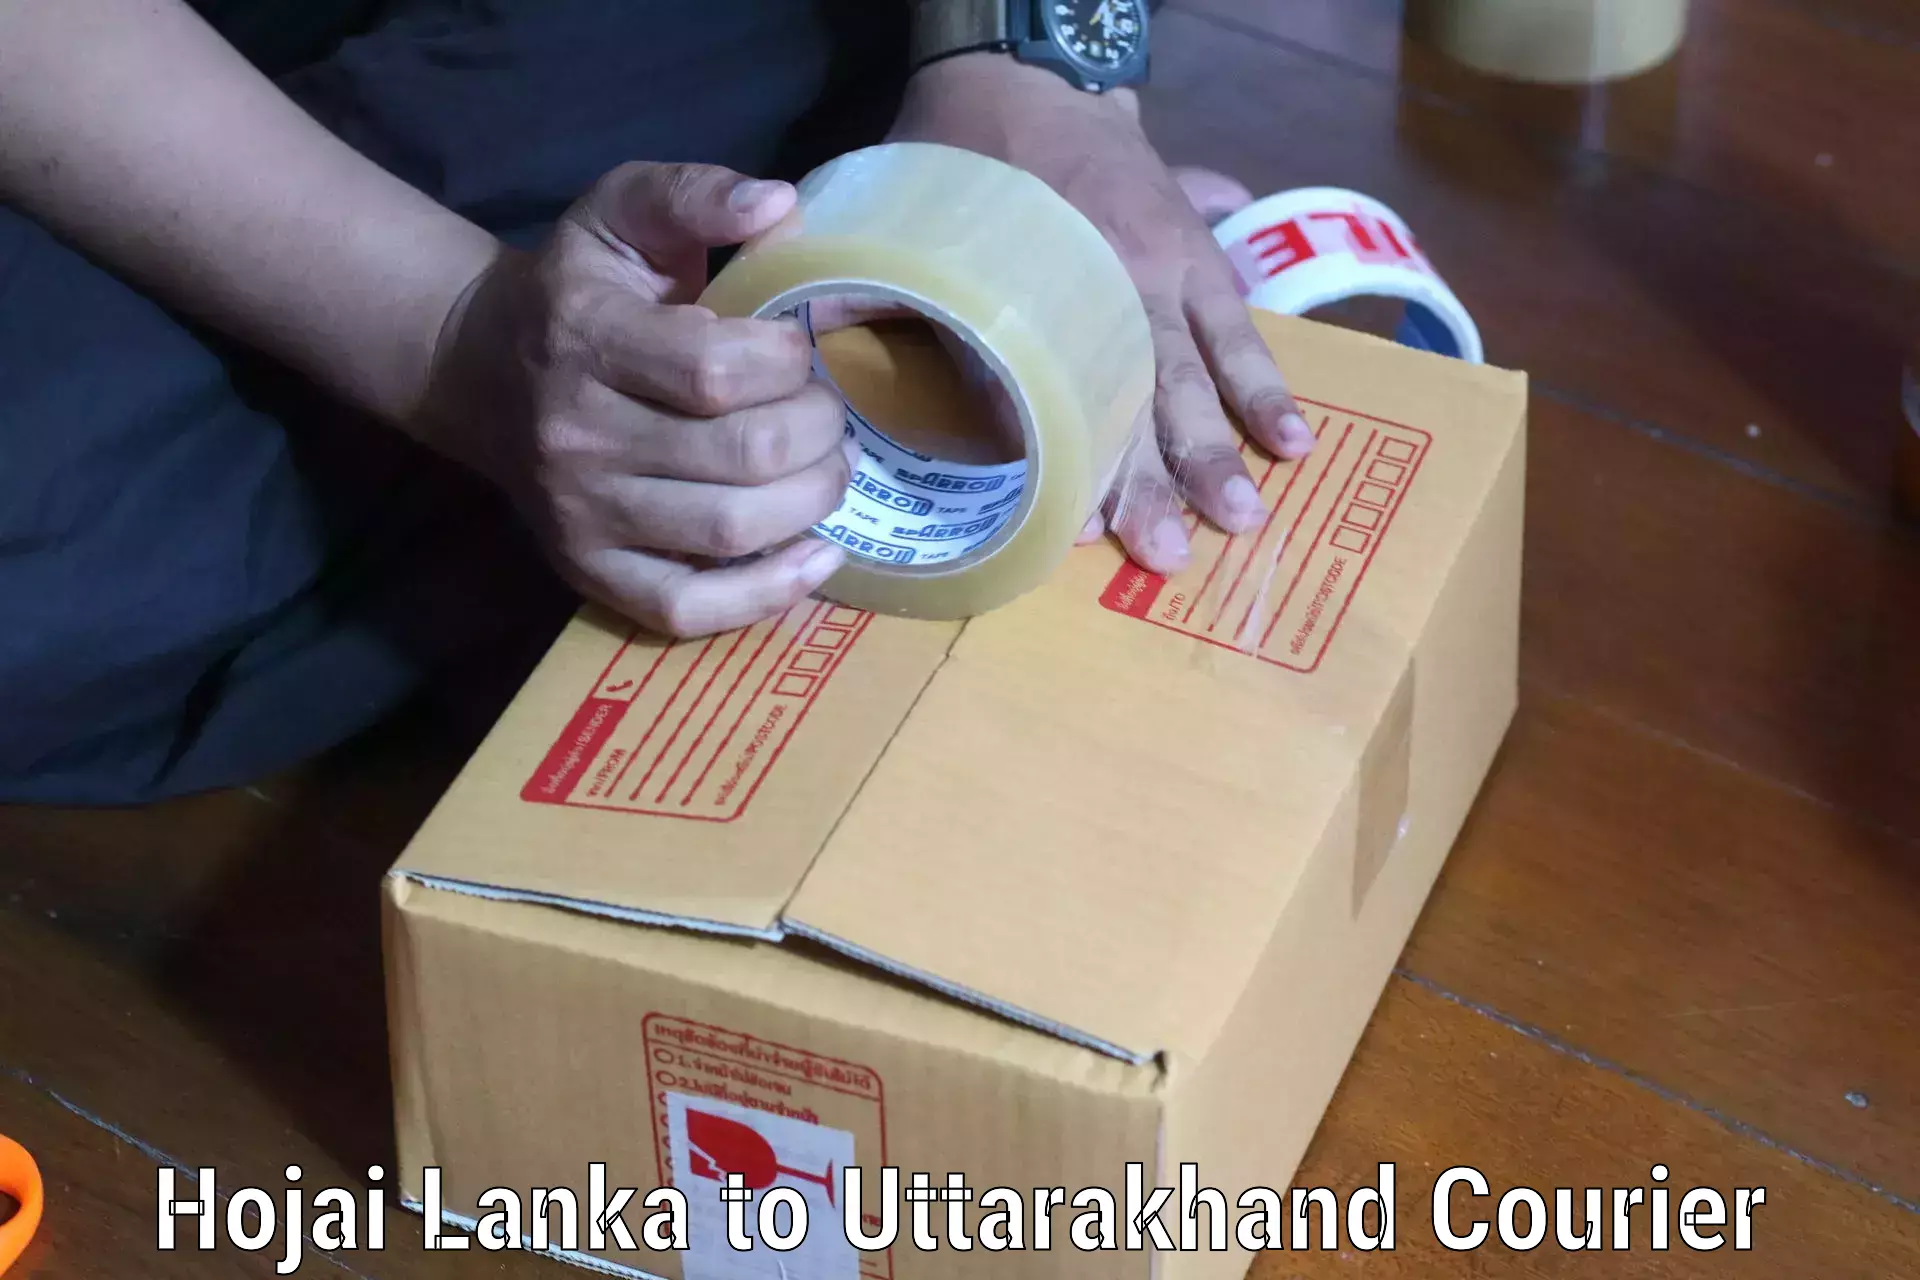 Custom courier packages Hojai Lanka to Kotdwara